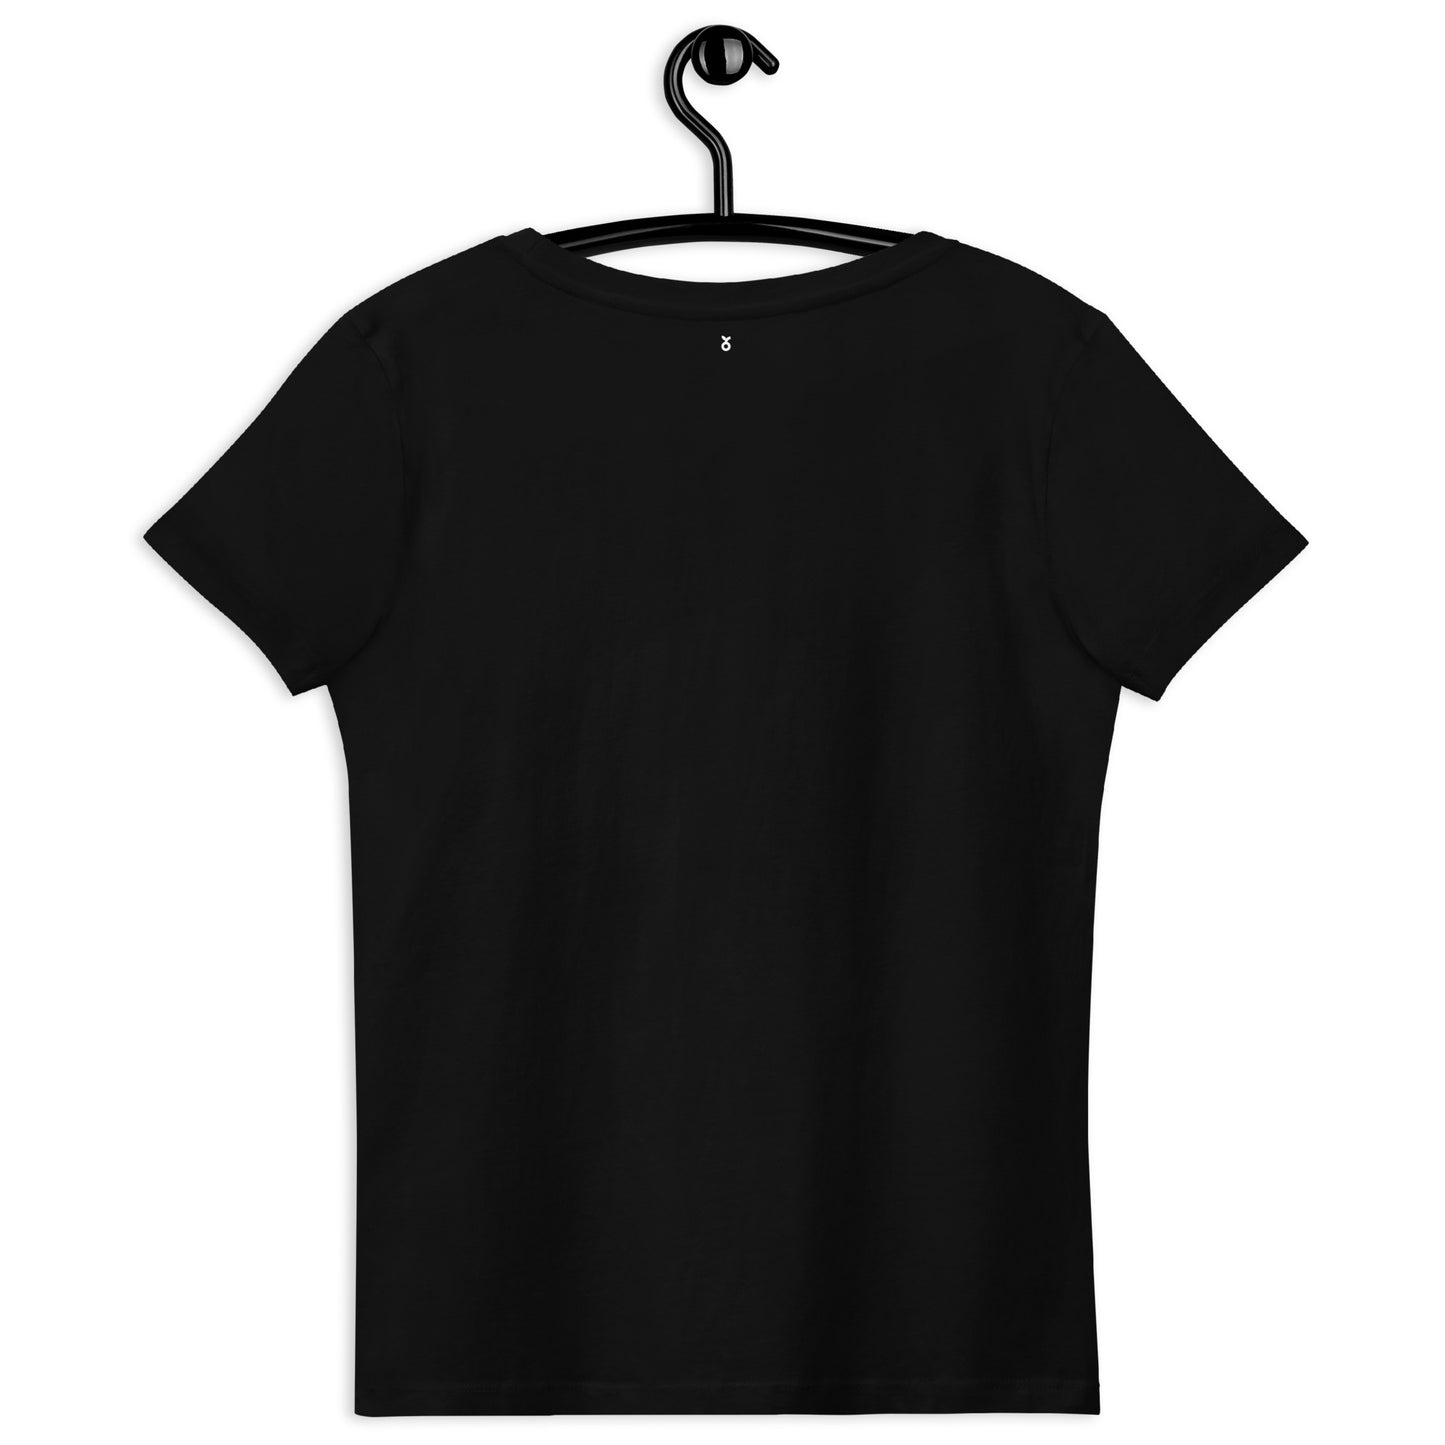 T-shirt noir oiseaux printaniers brodés style Bauhaus coton bio - Femme